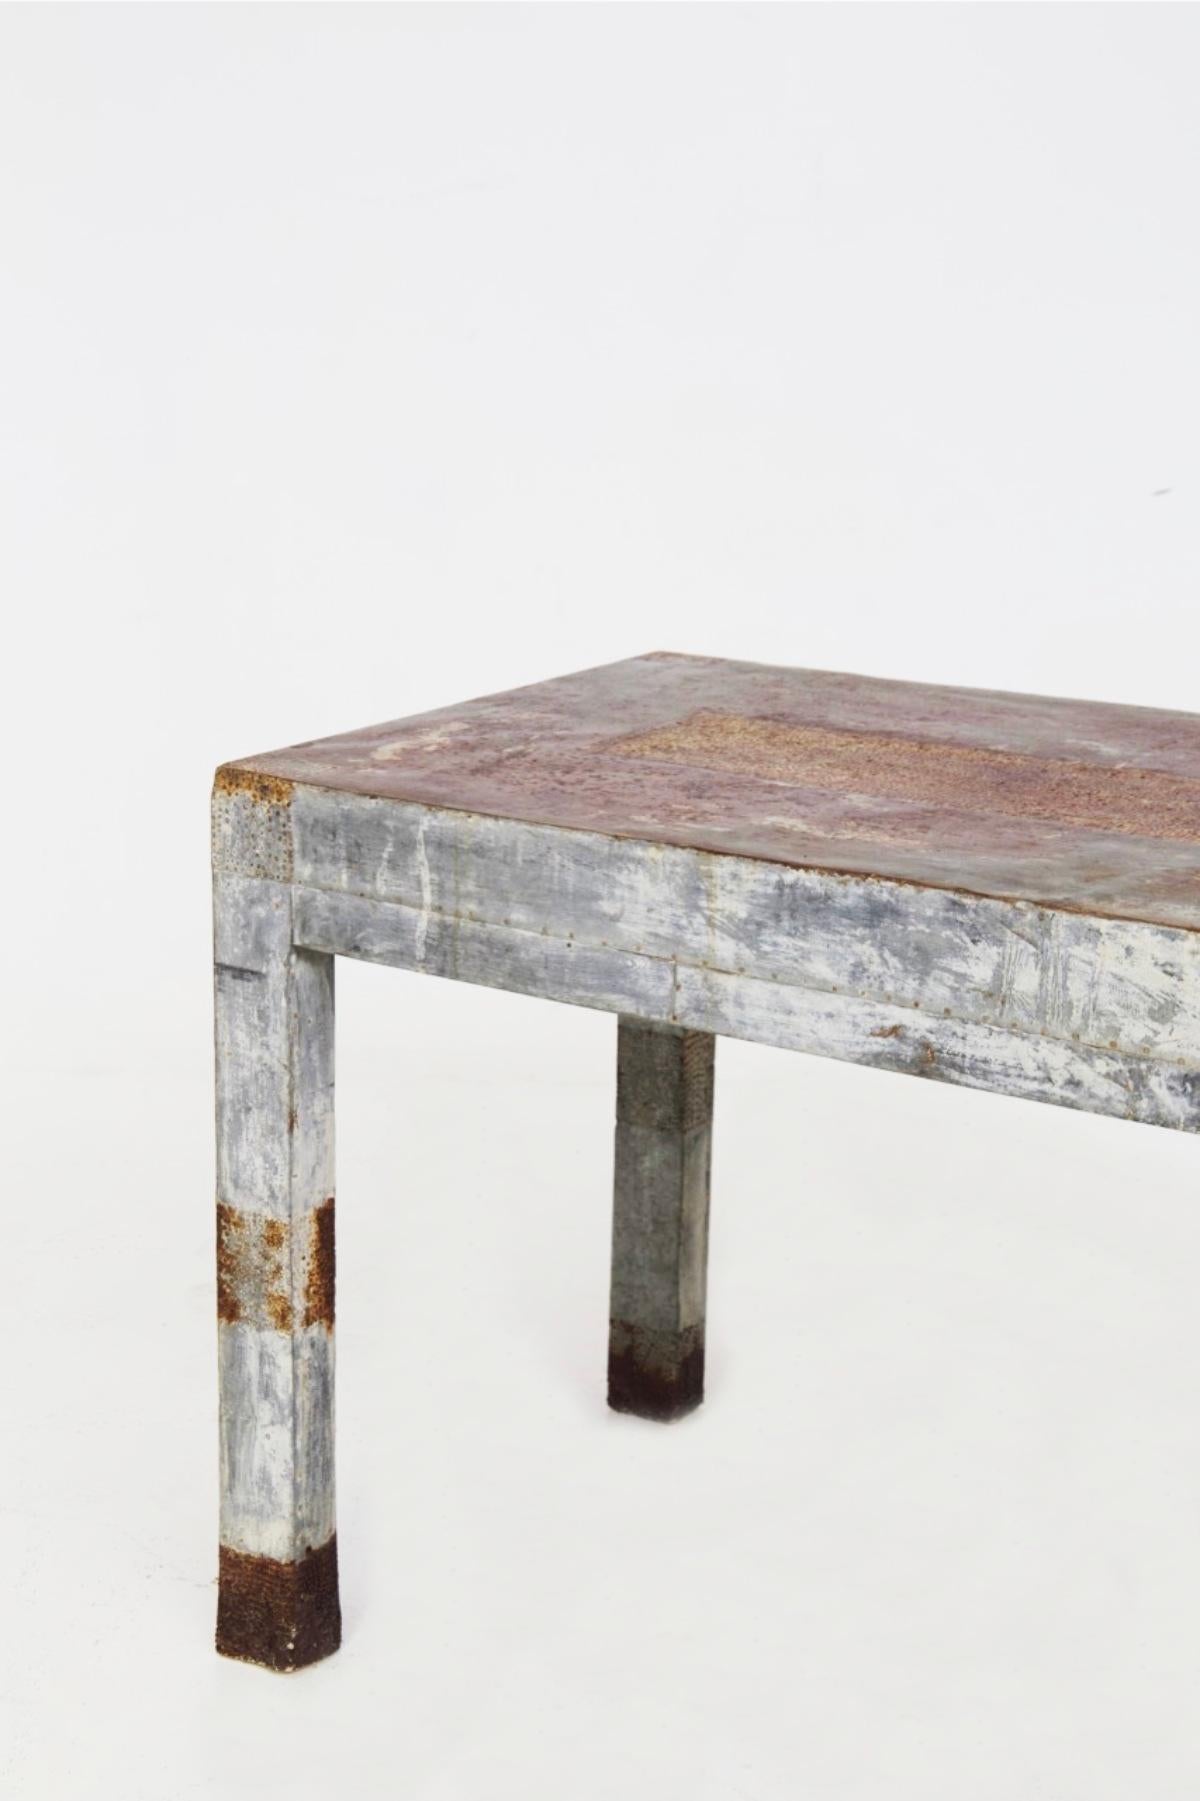 Charakteristischer gedeckter Holztisch aus den frühen 1900er Jahren, hergestellt in Italien.
Der Tisch ist wirklich prächtig in seiner Ausführung und Verarbeitung.
Der Tisch ist im Ganzen einfach: Er hat vier quadratische Beine, die das Gestell